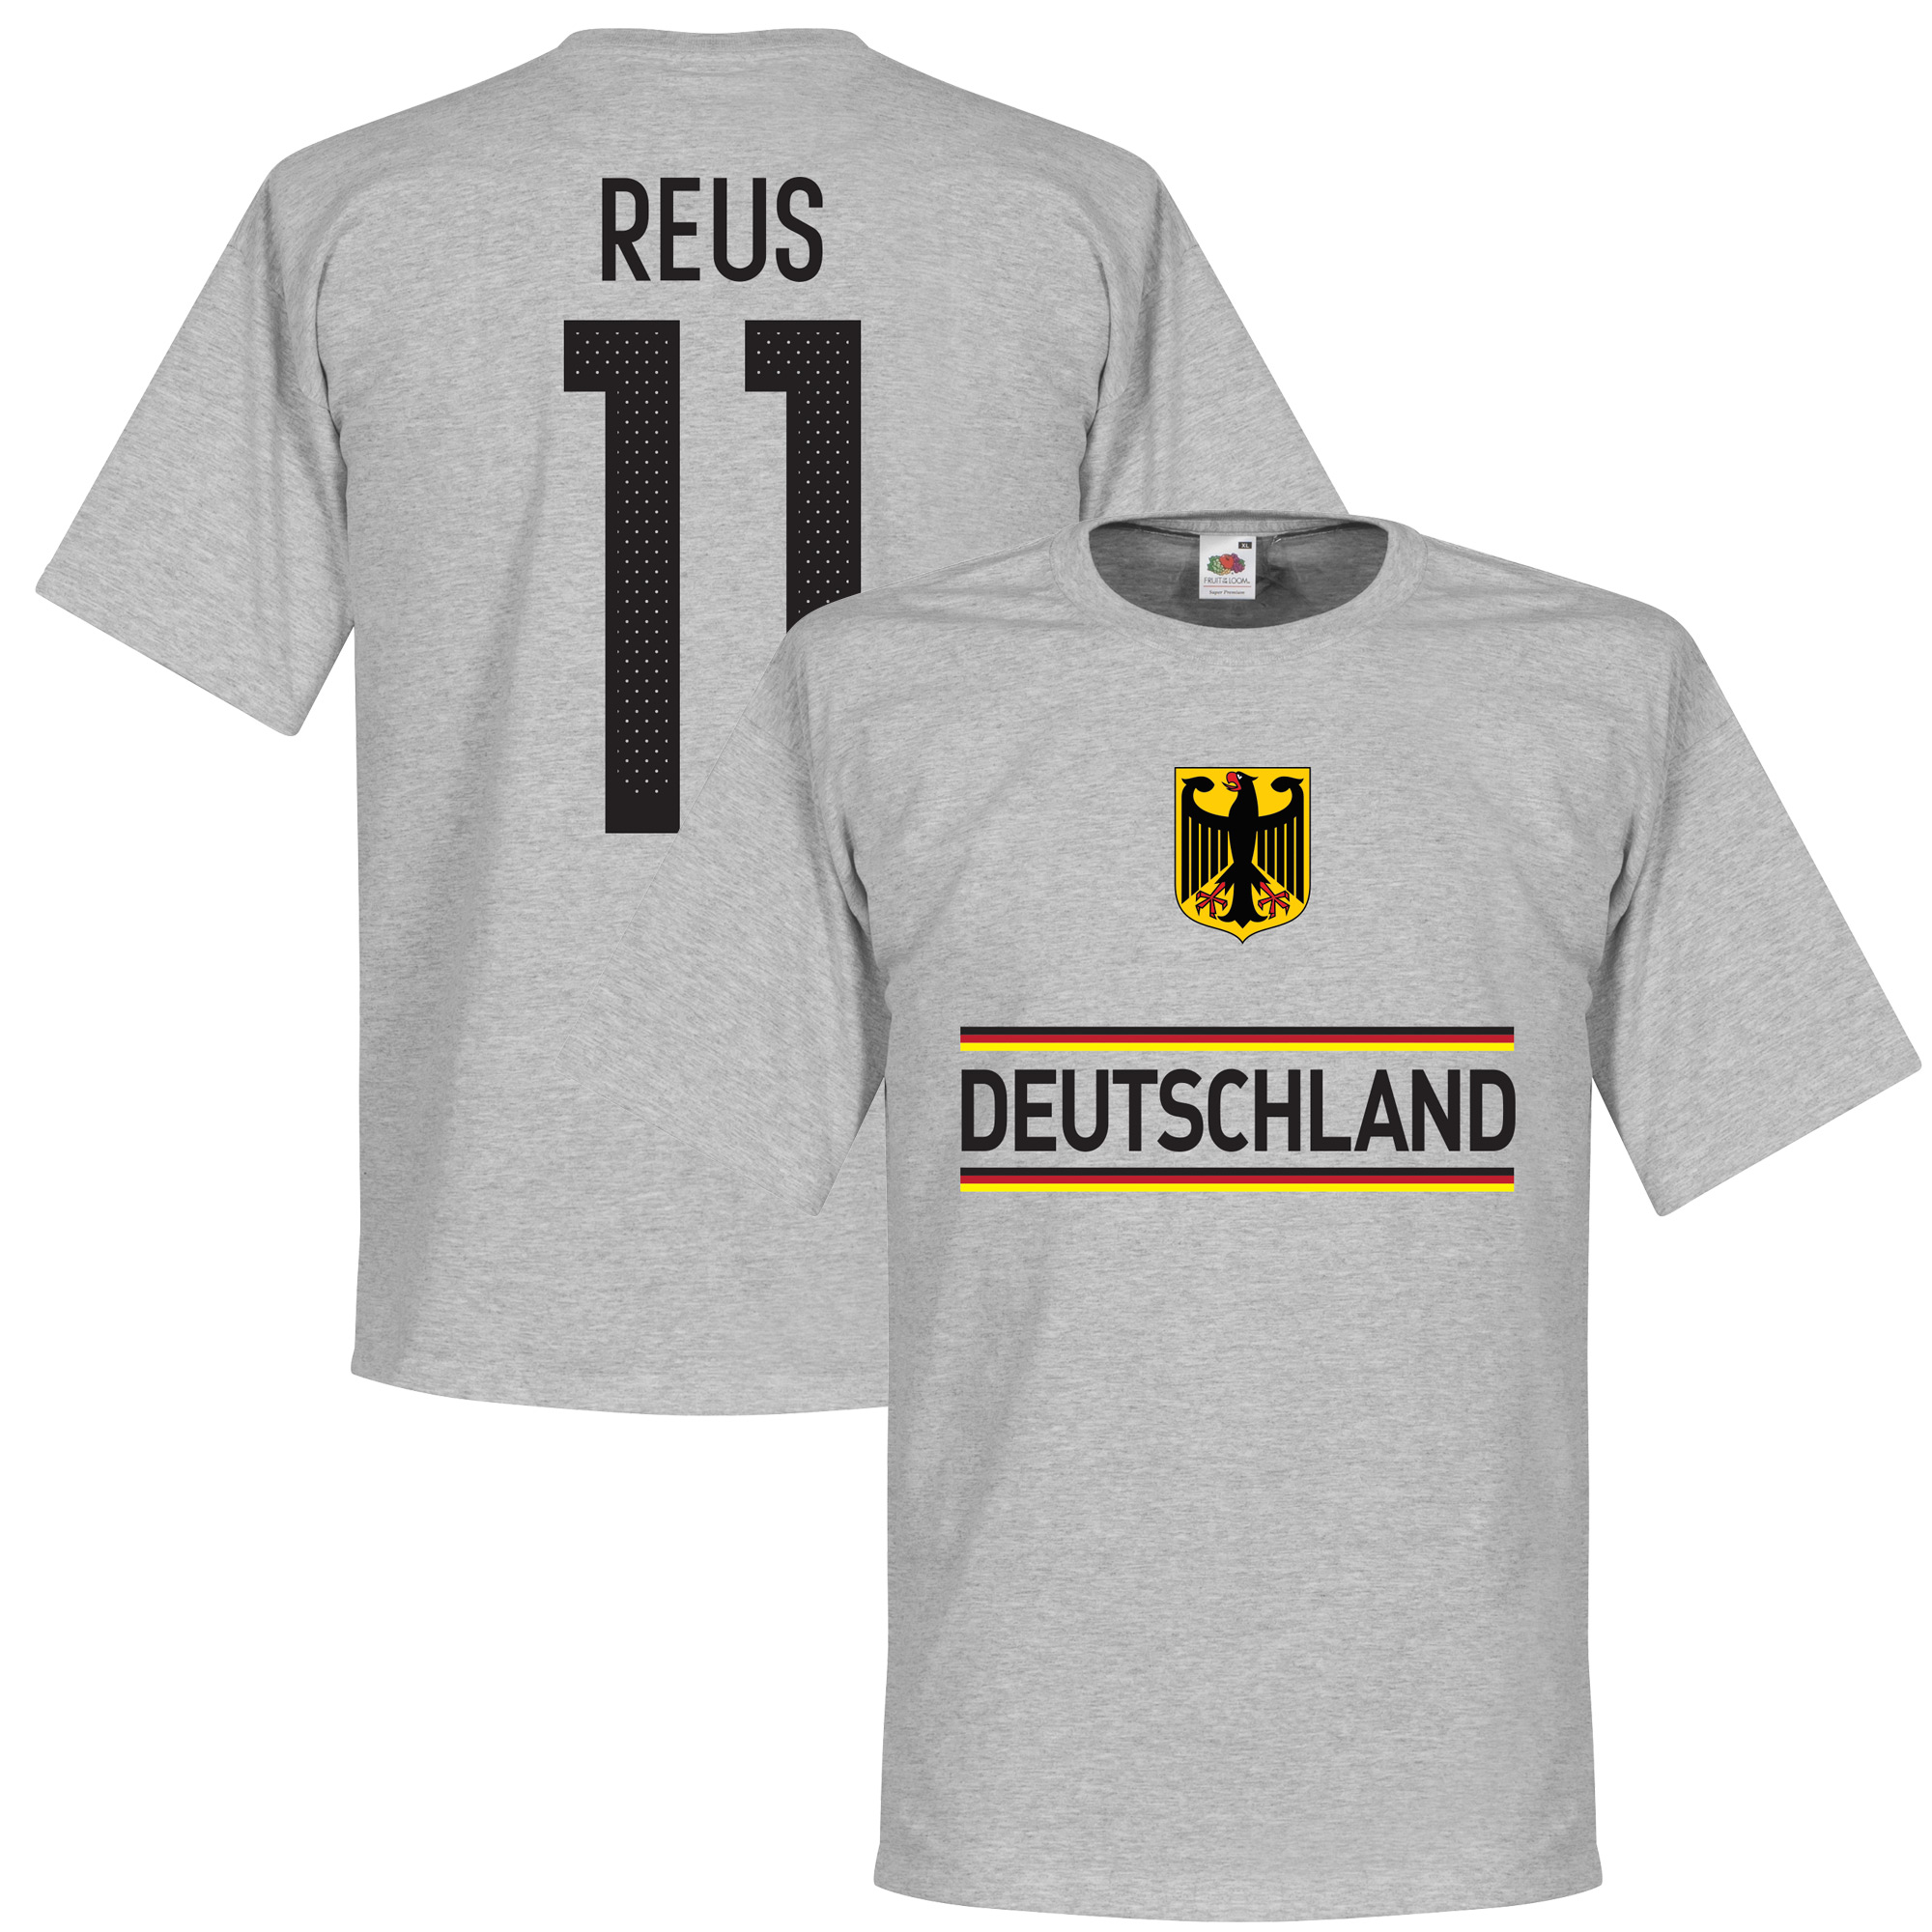 Duitsland Reus Team T-Shirt S